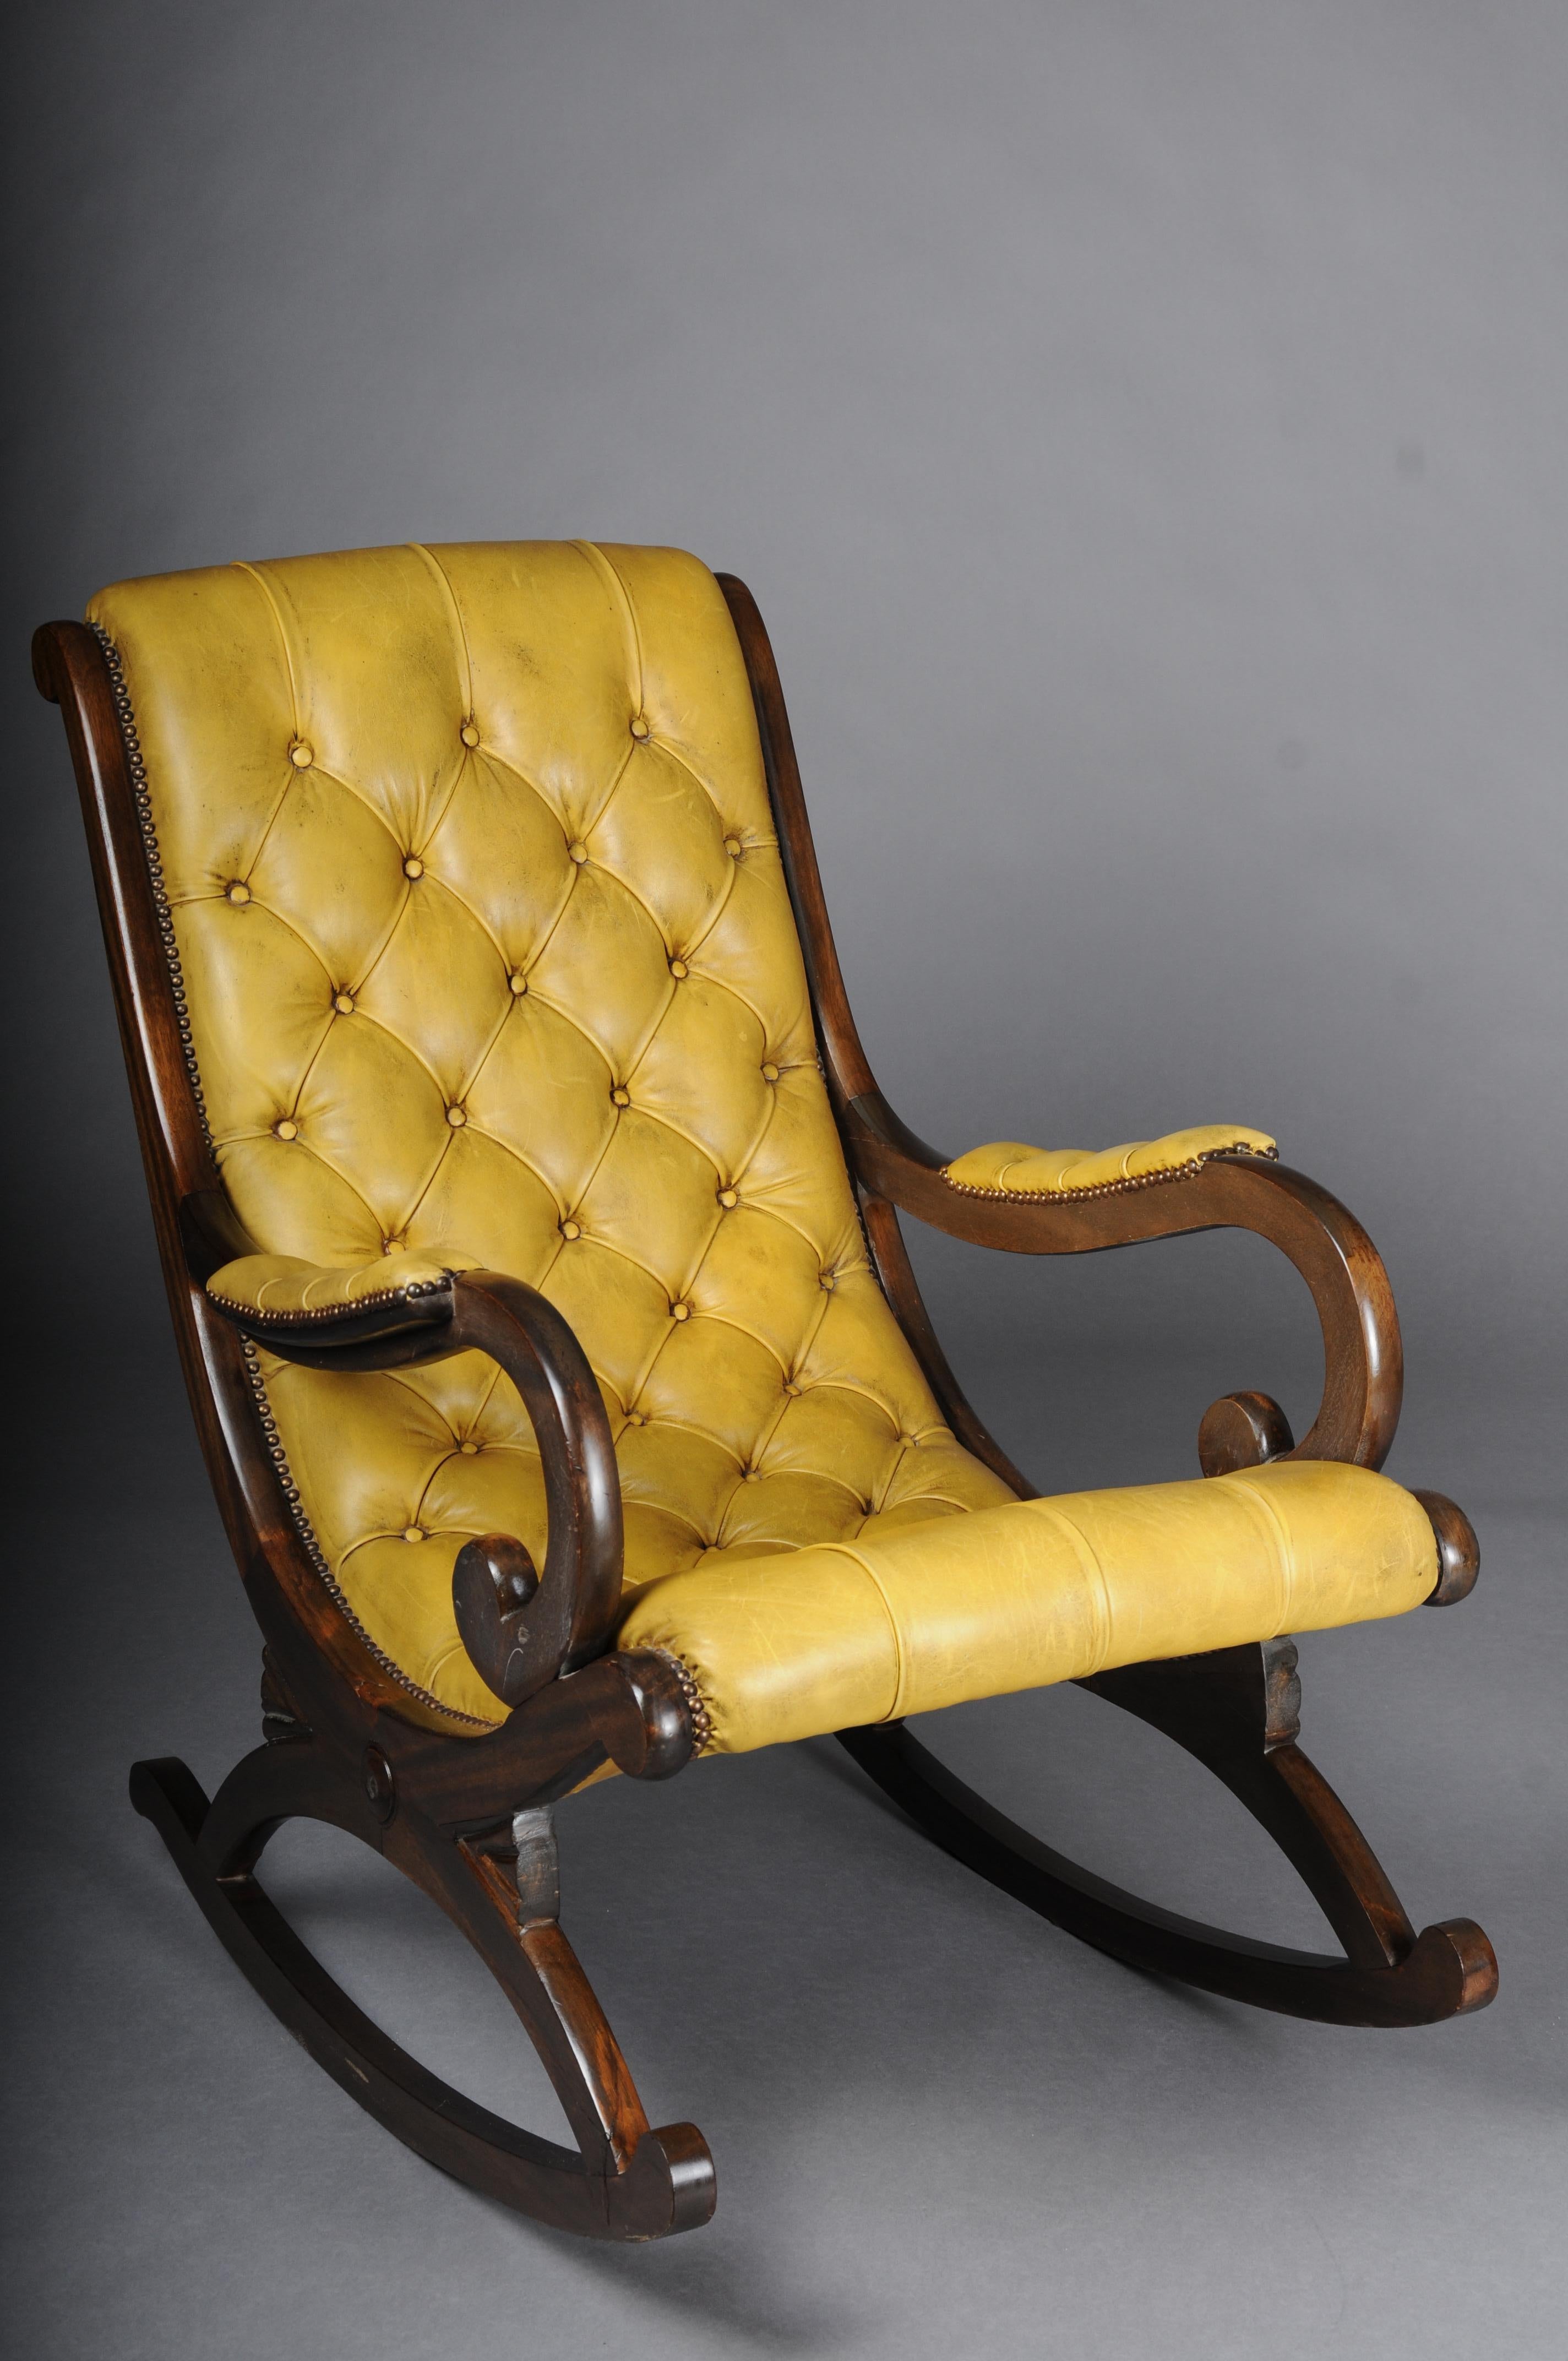 20e siècle Ancienne chaise à bascule Chesterfield anglaise

Bois massif, finement sculpté. Entièrement recouvert de cuir Chesterfield de haute qualité.

hauteur d'assise 47
largeur du siège 52
profondeur du siège 56
